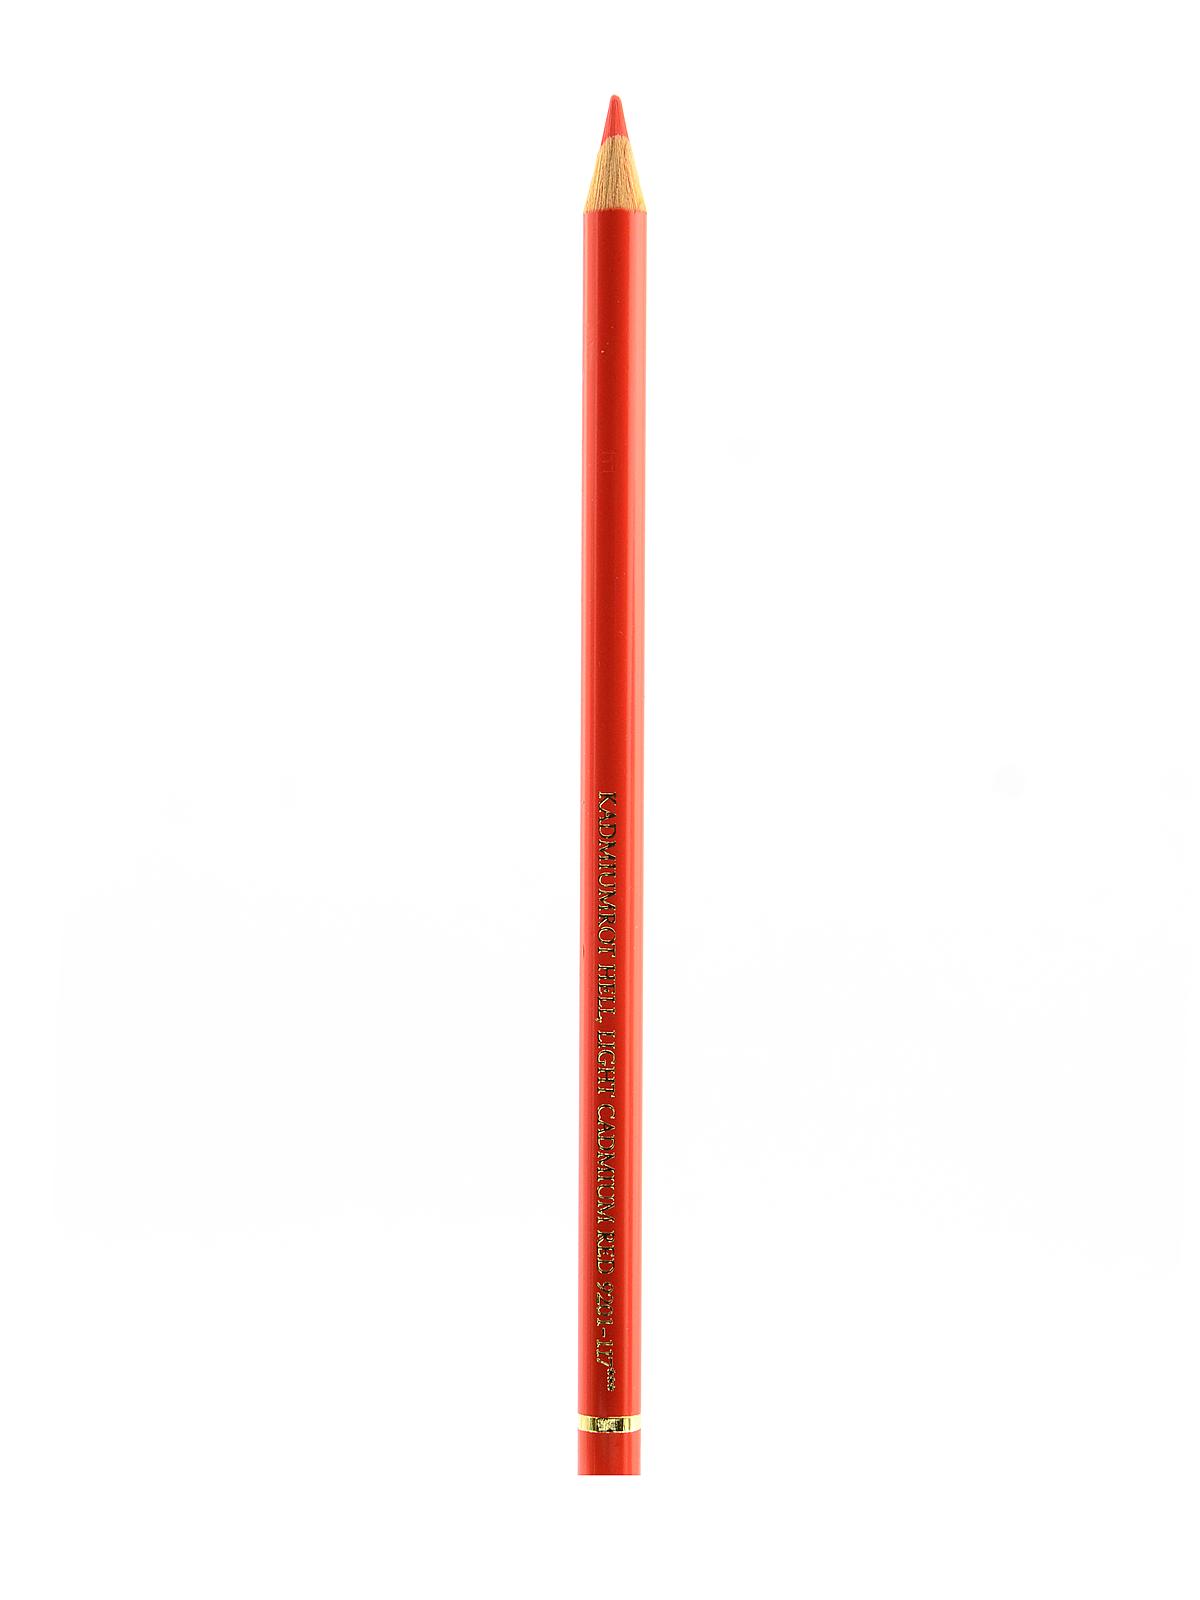 Polychromos Artist Colored Pencils (each) Light Cadmium Red 117